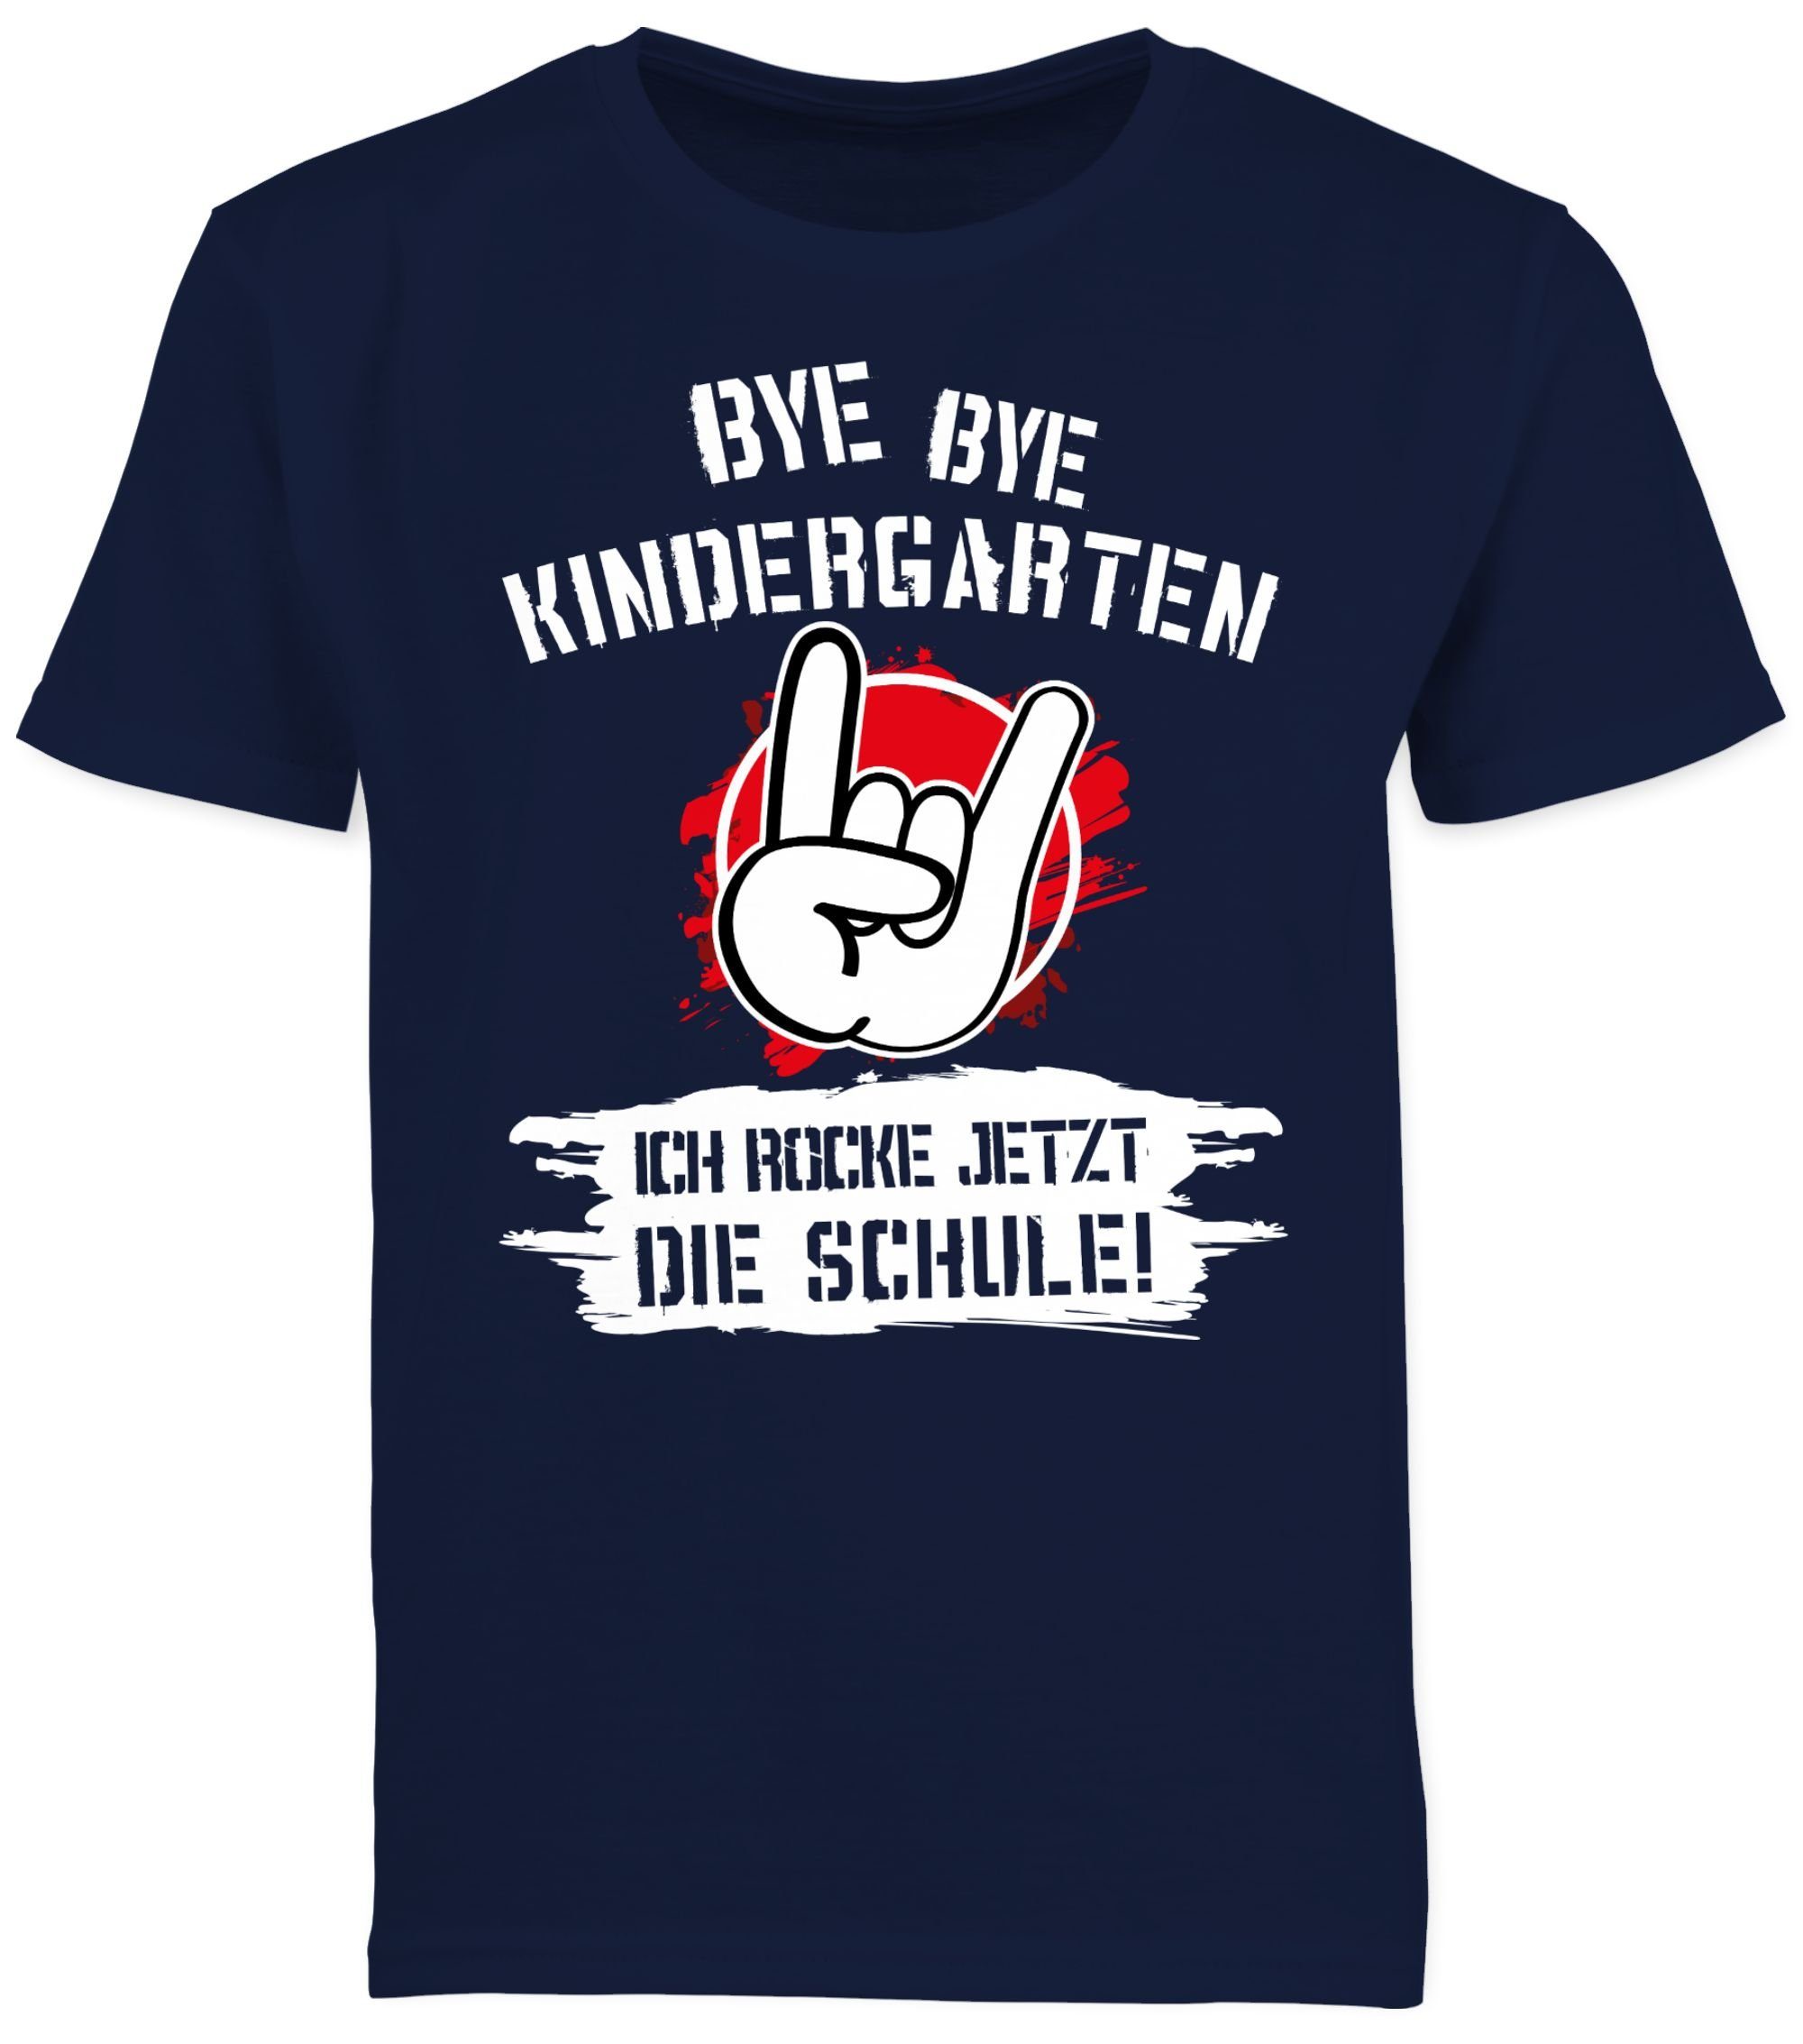 Shirtracer T-Shirt Bye Bye Kindergarten Dunkelblau rocke jetzt Schule die Einschulung ich Rot Schulanfang Junge Geschenke Grunge 2